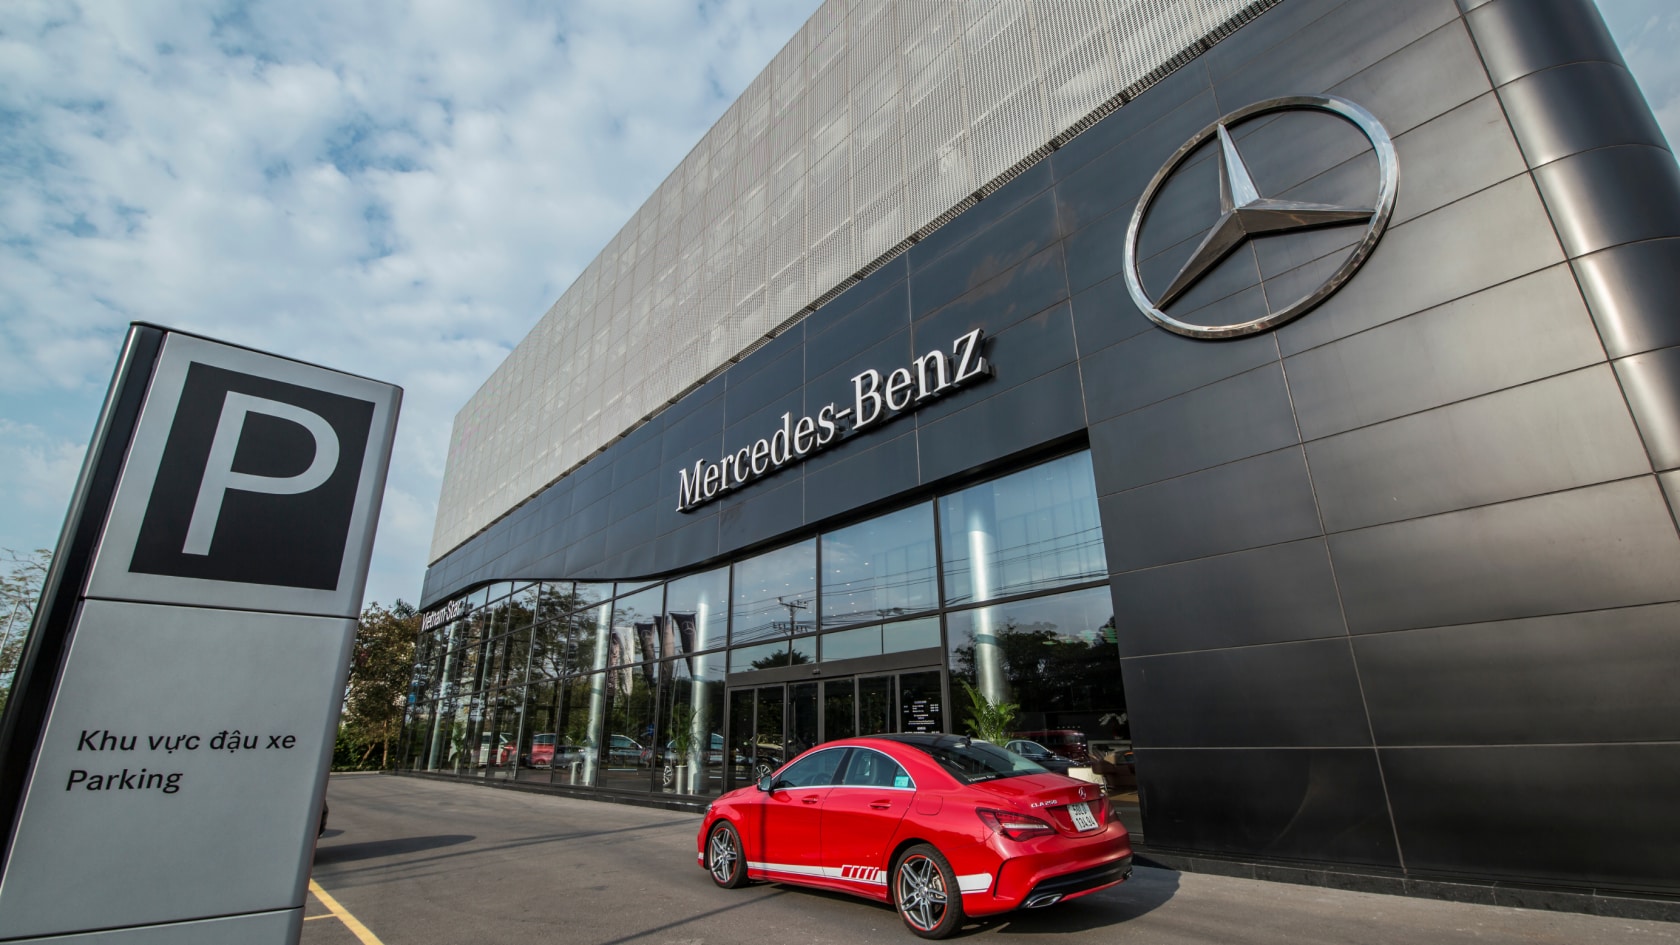 Danh sách địa chỉ trung tâm bảo hành Mercedes Benz cập nhật mới nhất